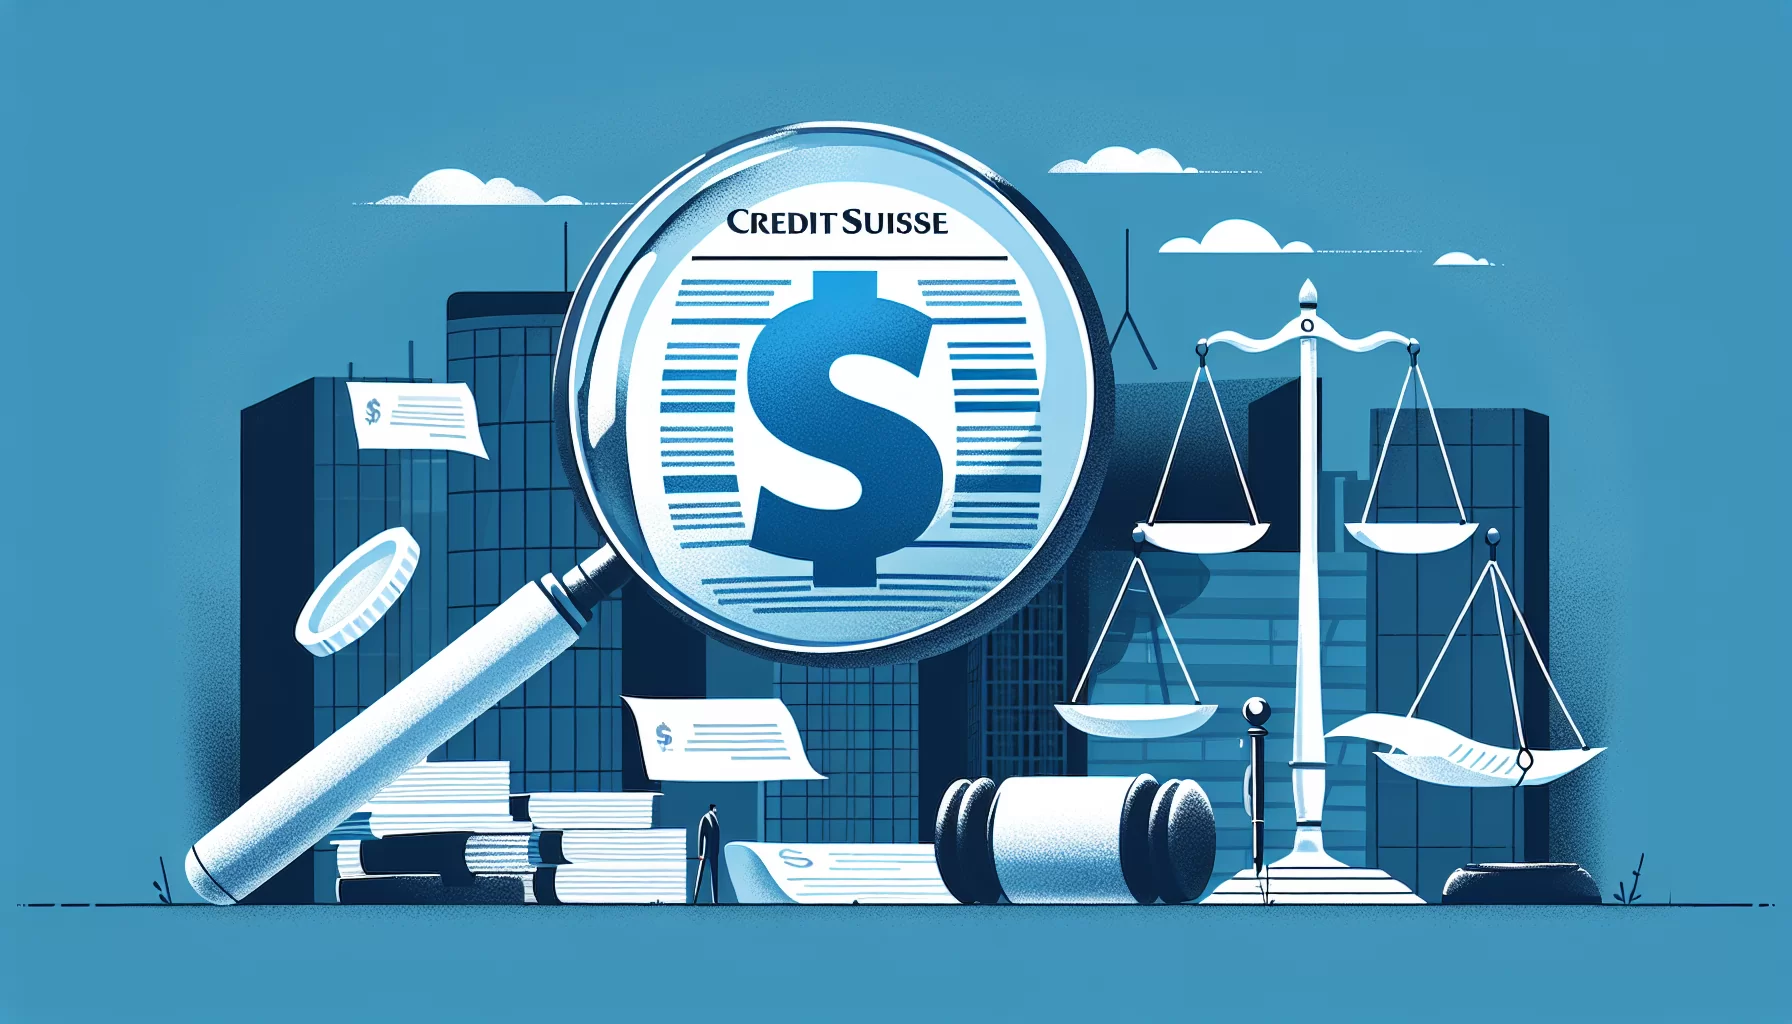 Decoding the 17 billion dollar bondholder lawsuit against Credit Suisse